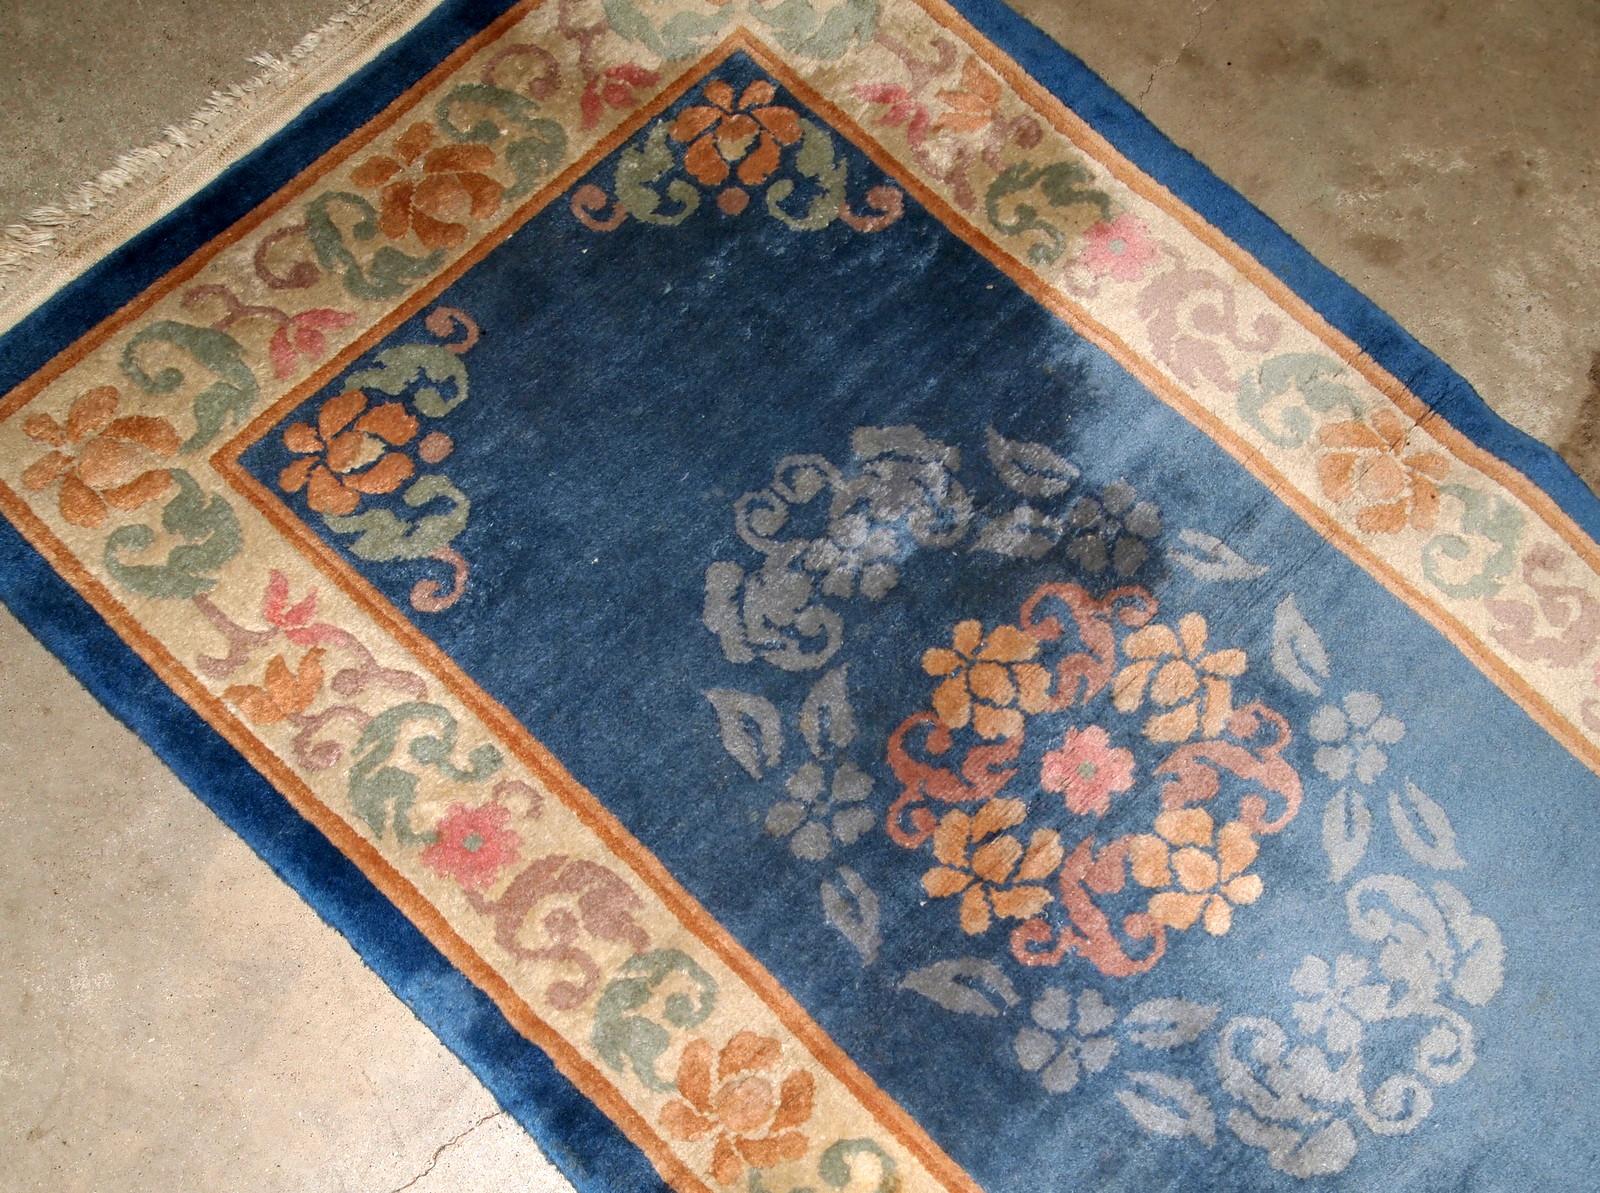 Antiker handgefertigter chinesischer Art-Déco-Teppich in Blautönen und traditionellem Blumenmuster. Der Teppich ist aus den 1960er Jahren und in gutem Originalzustand.
 